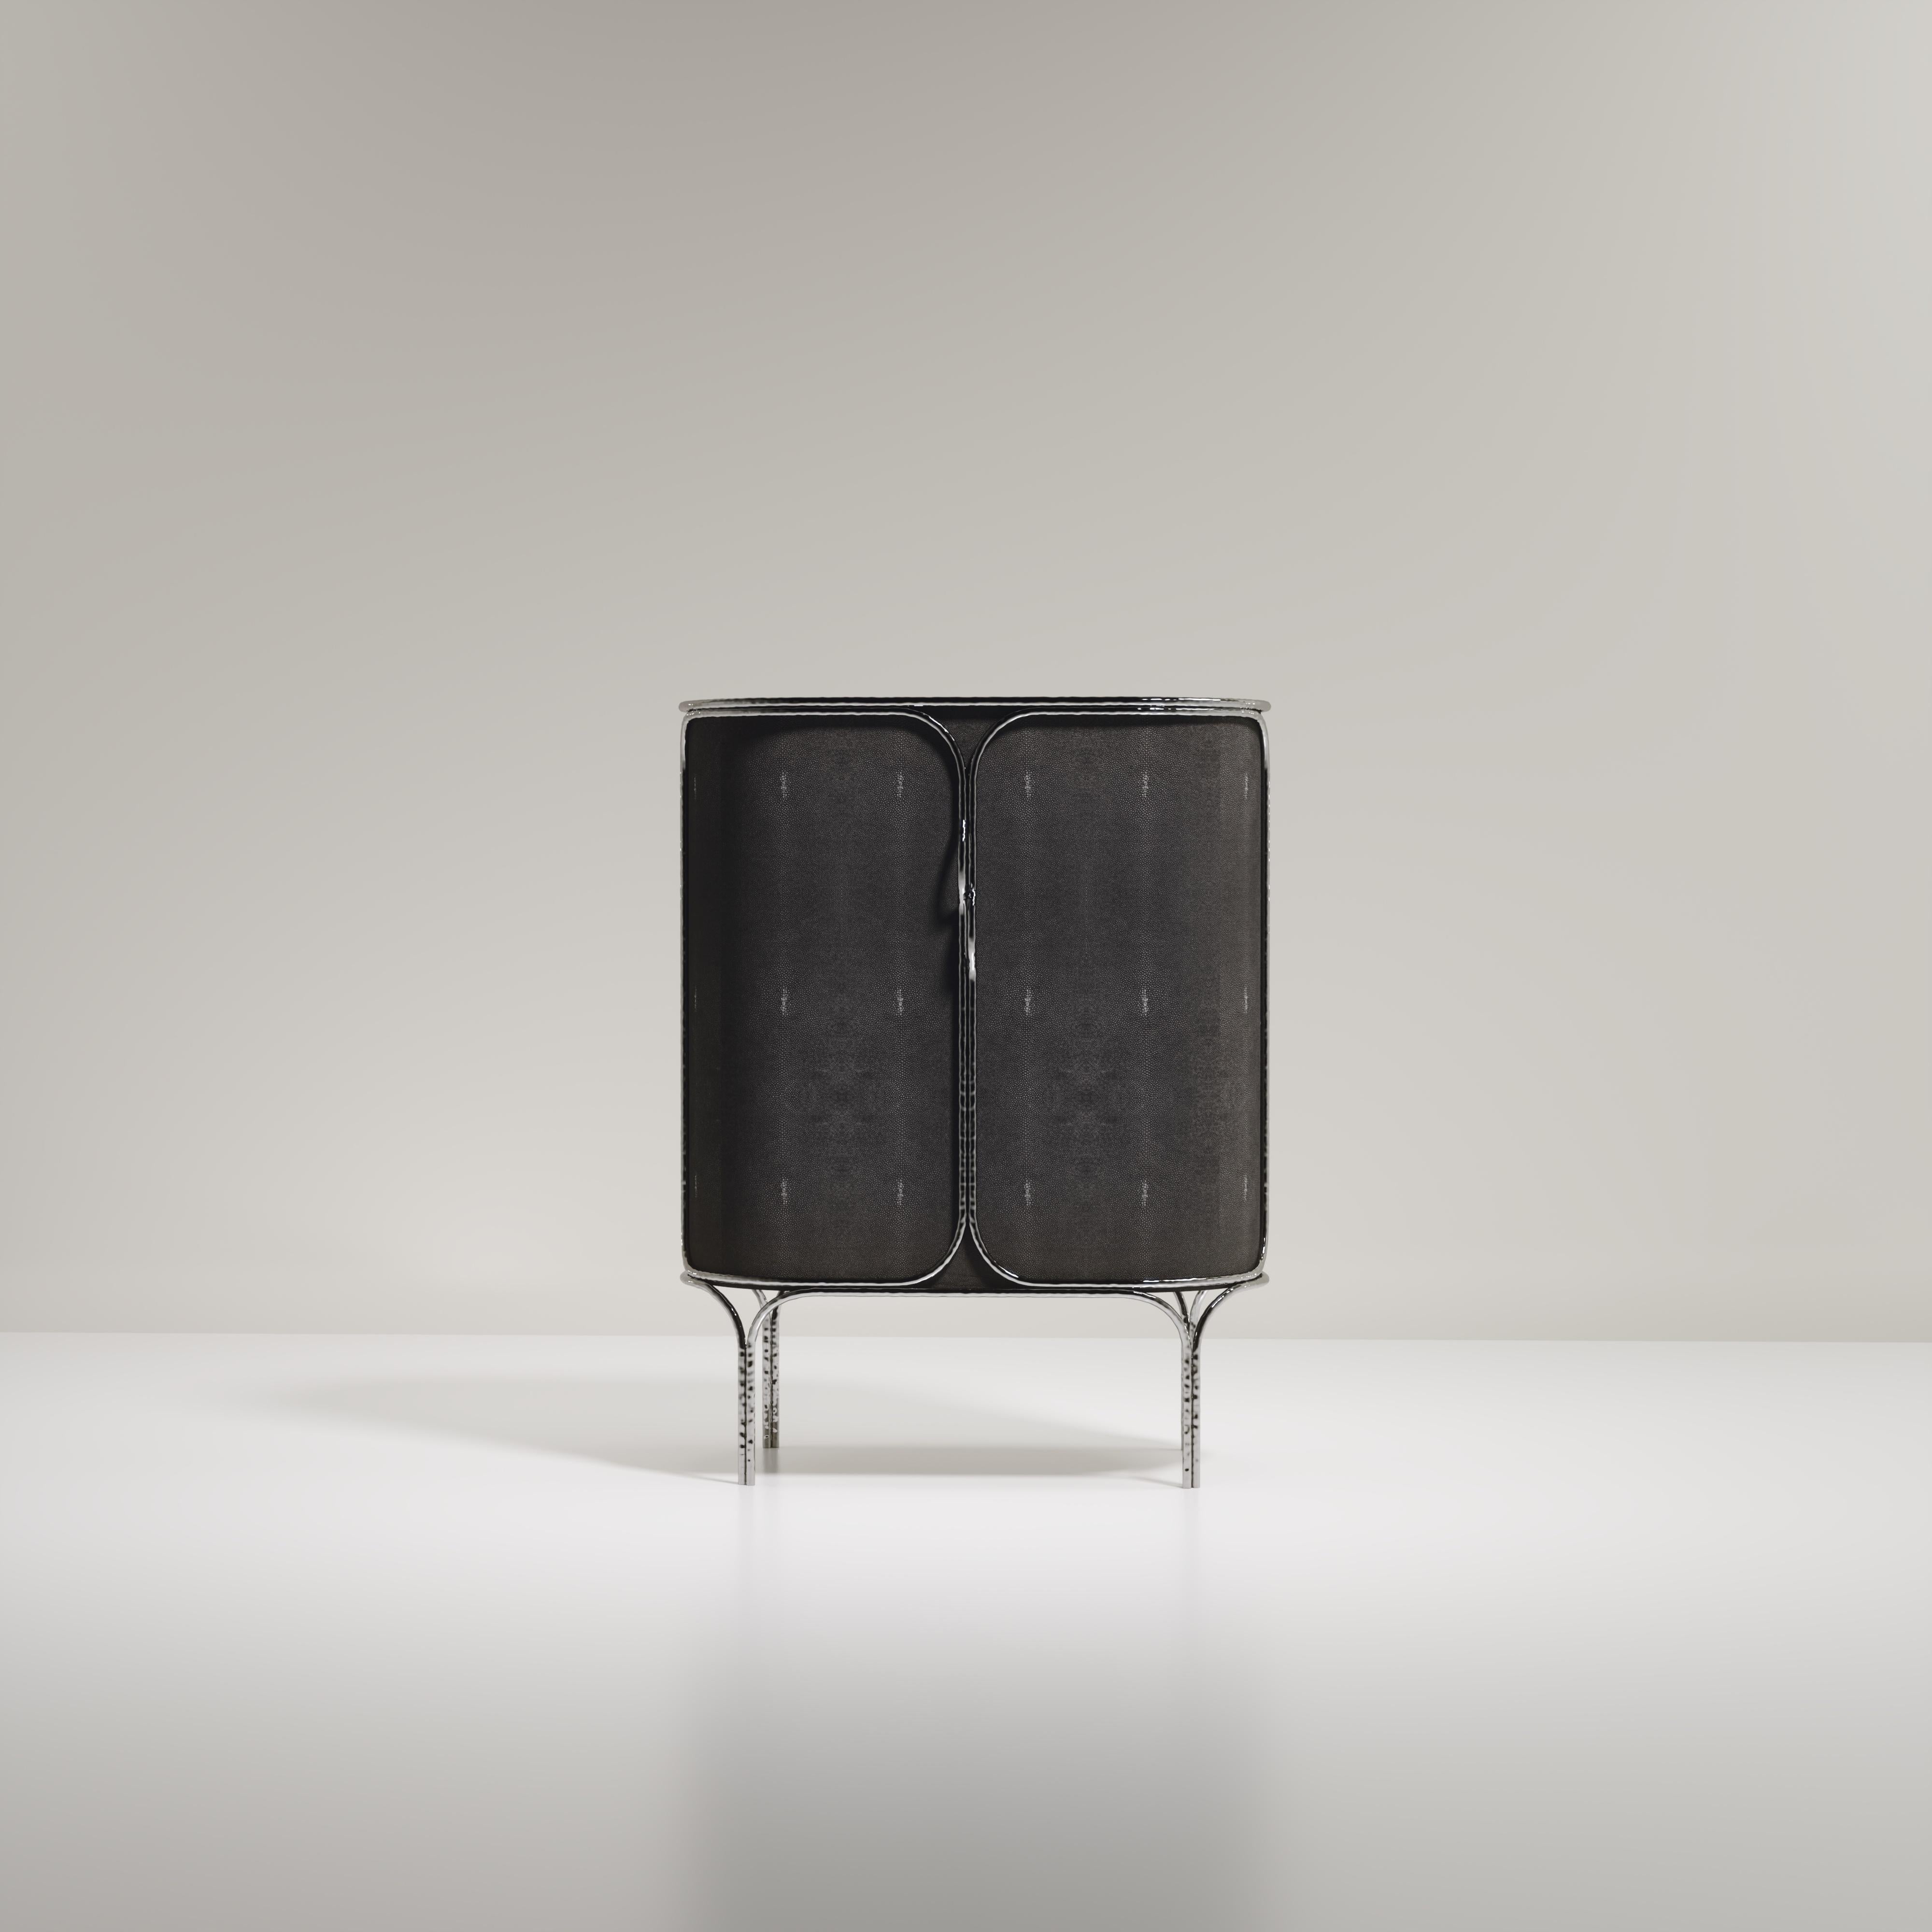 Le meuble bar Arianne de R&Y Augousti est une pièce unique. L'ensemble de la pièce est incrusté de galuchat noir de charbon, accentué par des détails complexes en acier inoxydable poli et chromé qui ont l'effet 